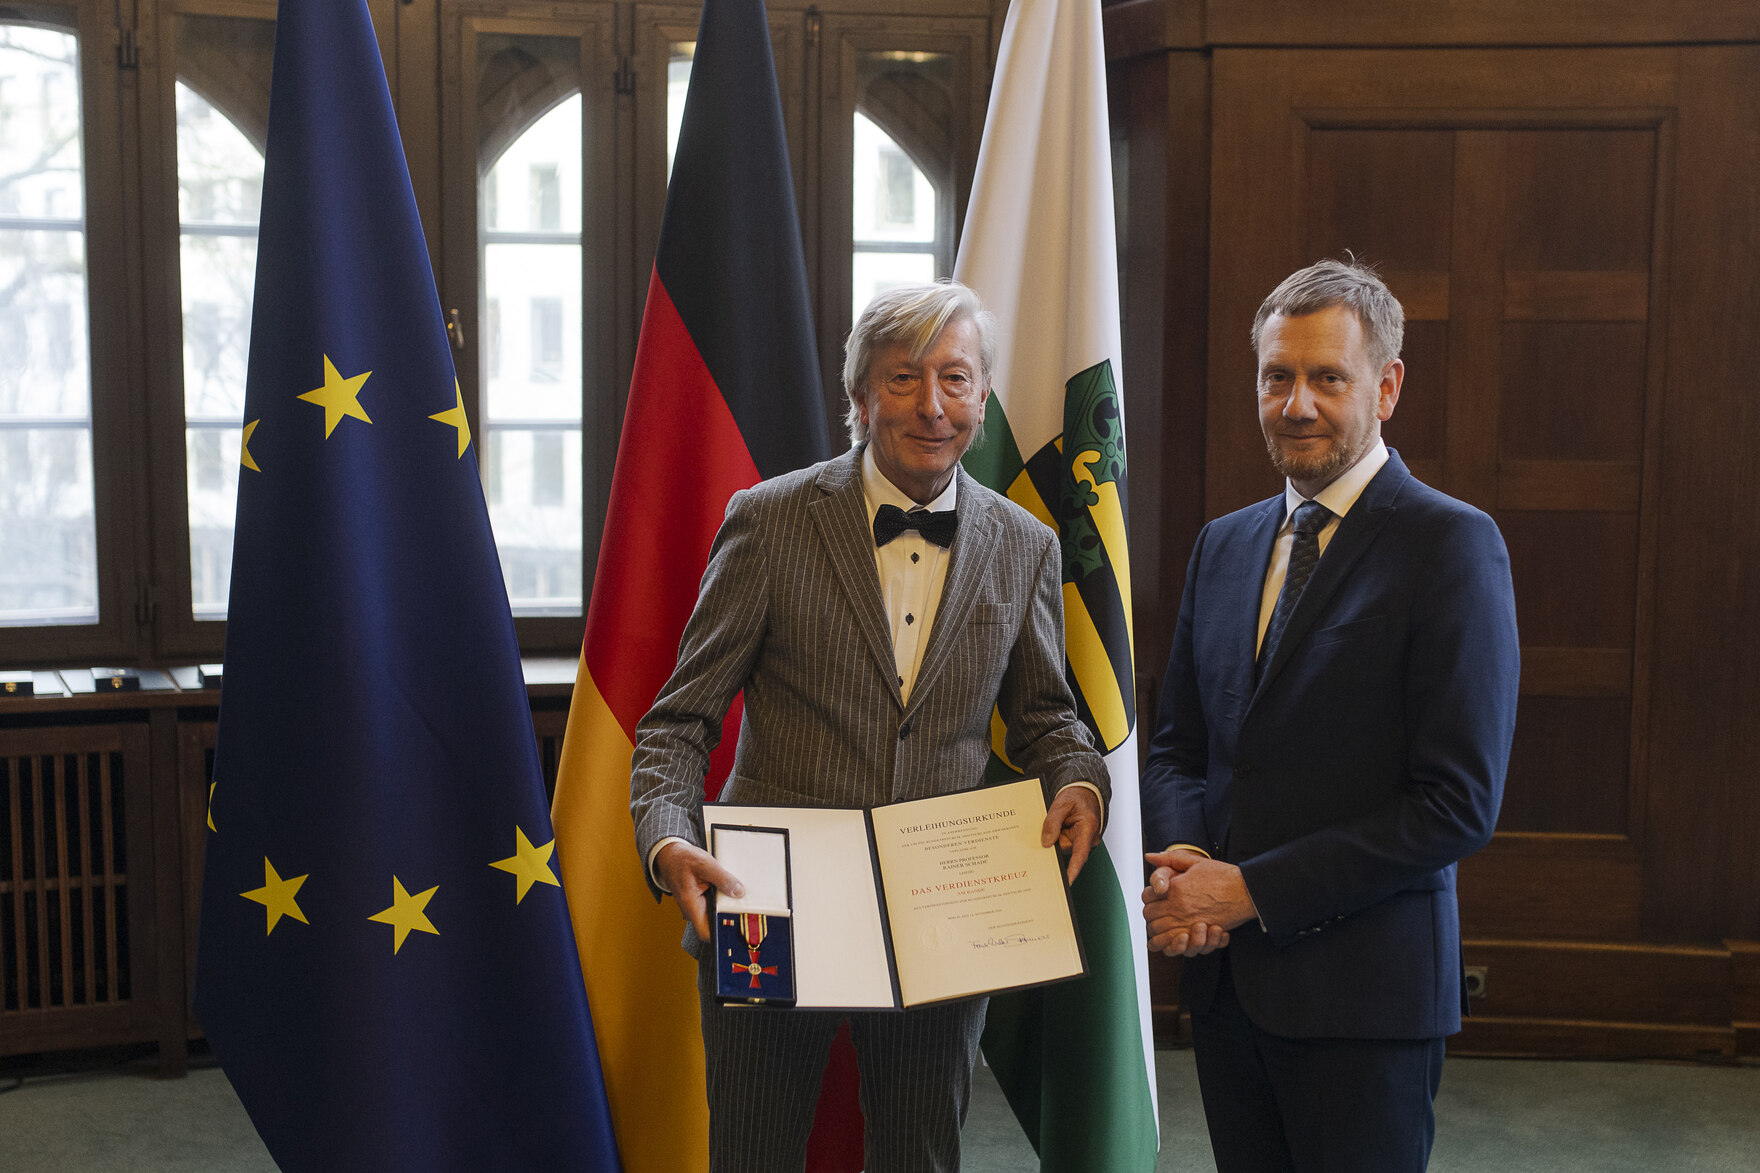 Zwei Männer in einem Raum, der Mann links hält eine offene Präsentationsmappe mit einer Auszeichnung, im Hintergrund die Flaggen der EU, Deutschlands und Sachsens.